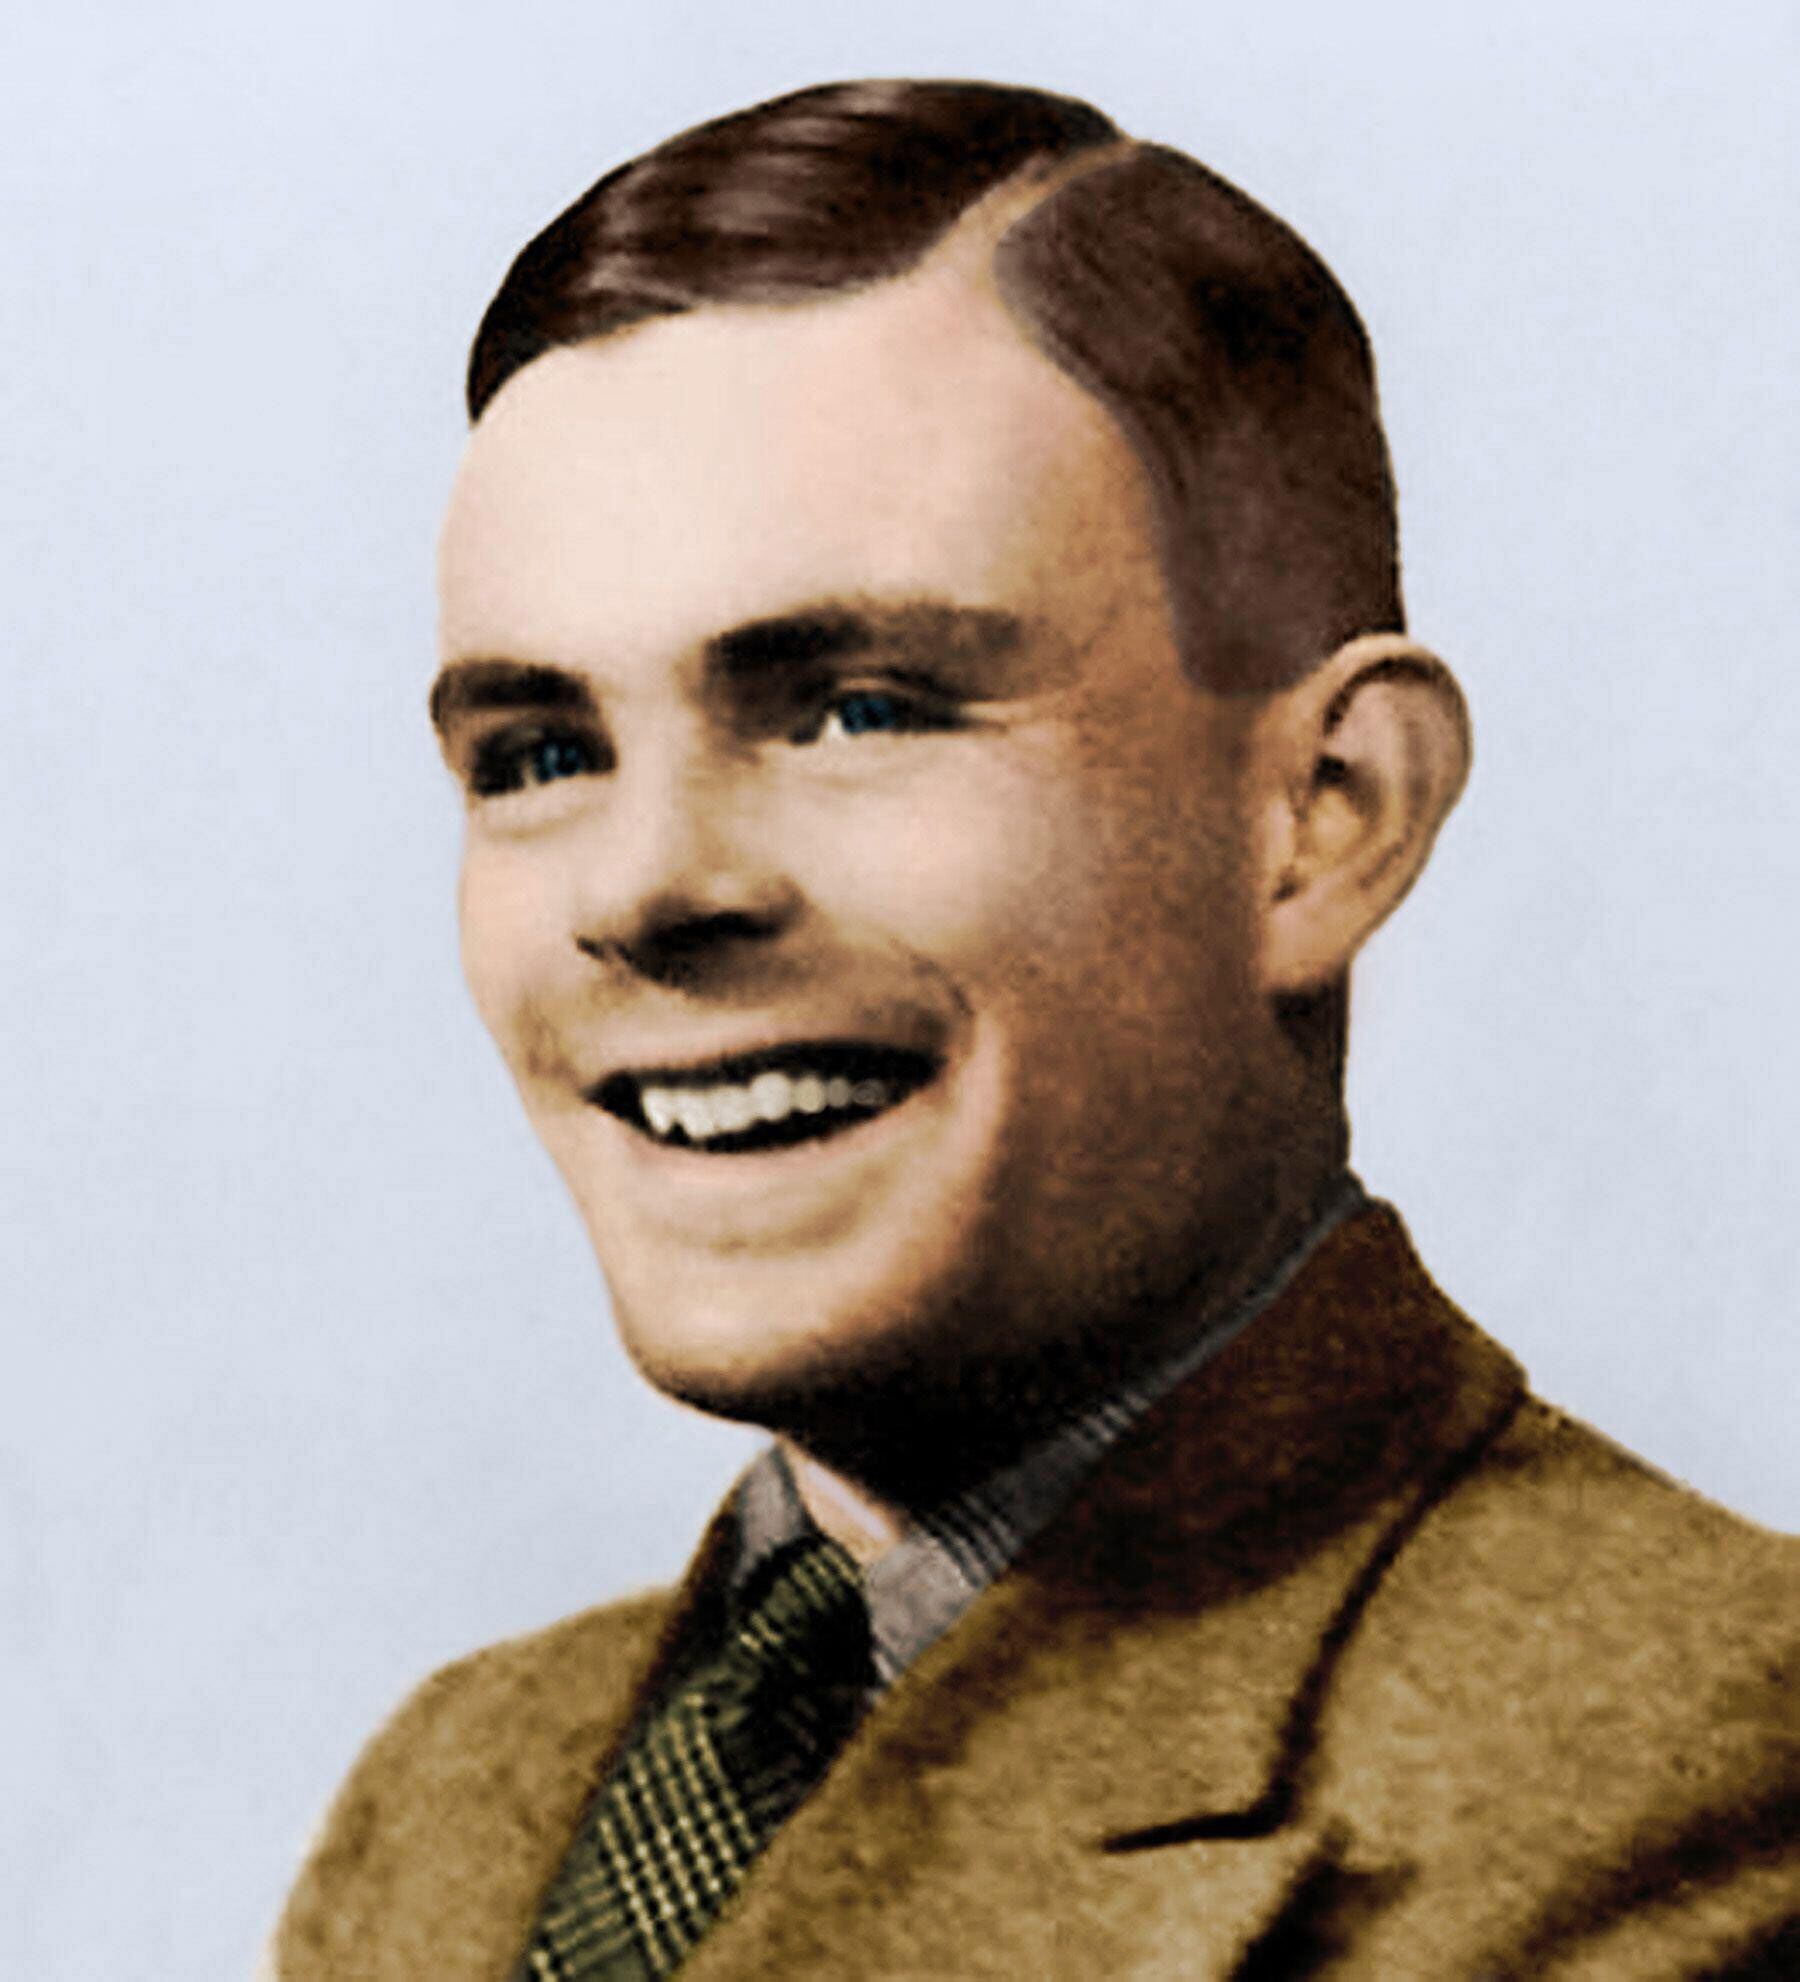 El matemático Alan Turing, inventor de la máquina que descifró códigos de los nazis, obtuvo el perdón póstumo de Isabel II. Había sido condenado por una relación homosexual en 1952.